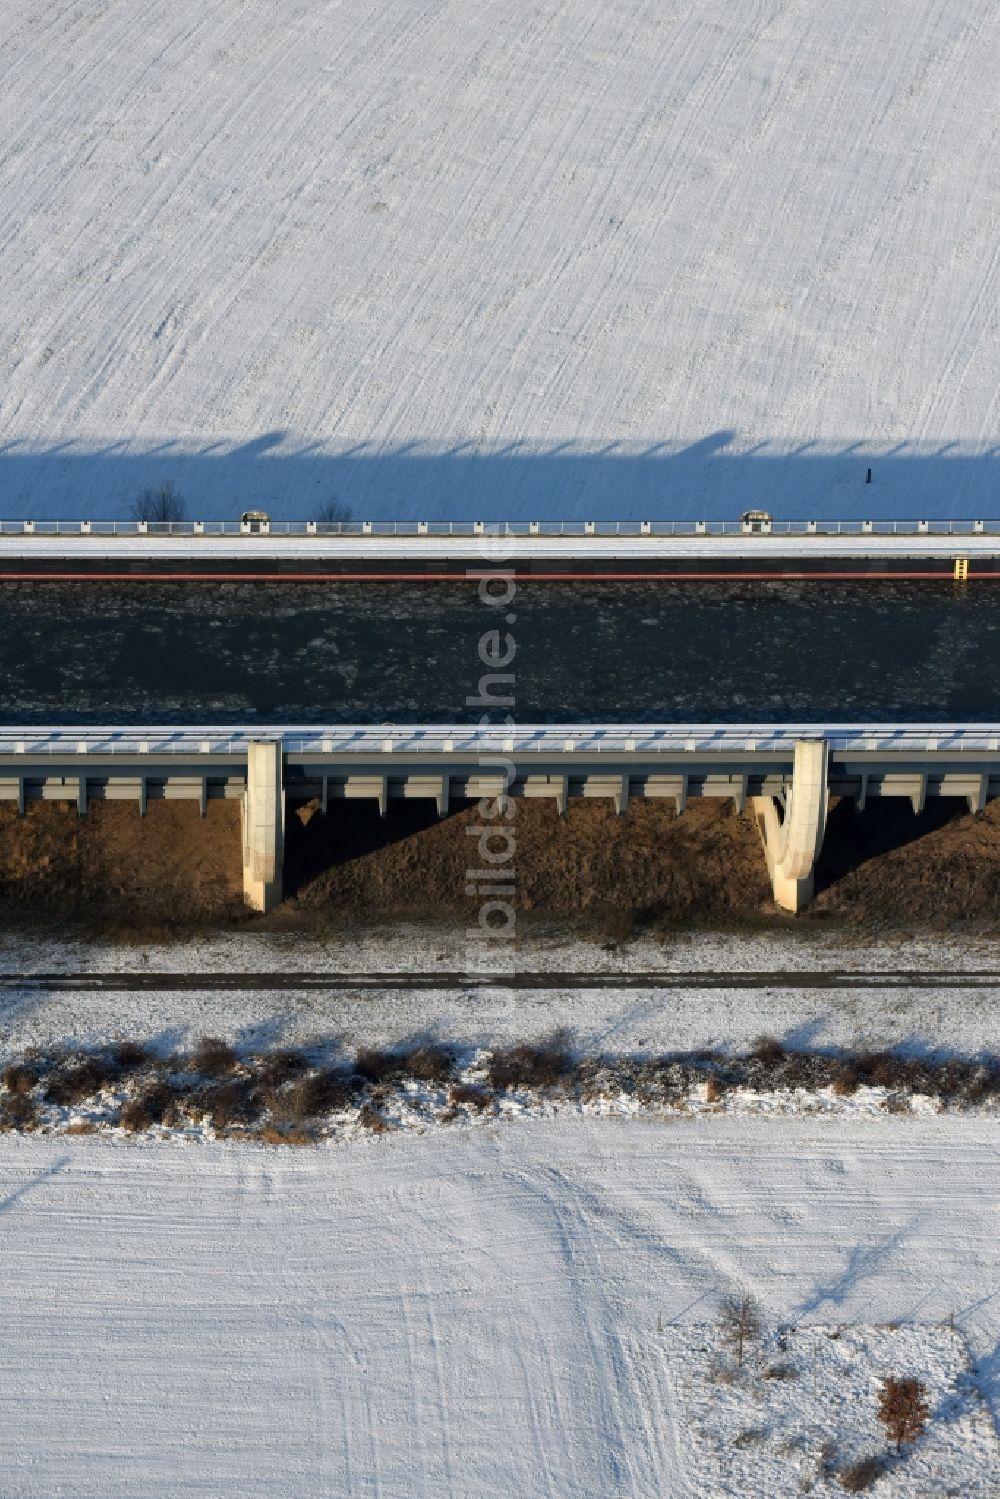 Luftbild Hohenwarthe - Winterlich Schnee- und Treibeis bedeckte Trogbrücke vom Mittellandkanal über die Elbe zum Elbe-Havel-Kanal am Wasserstraßenkreuz MD bei Hohenwarthe in Sachsen-Anhalt